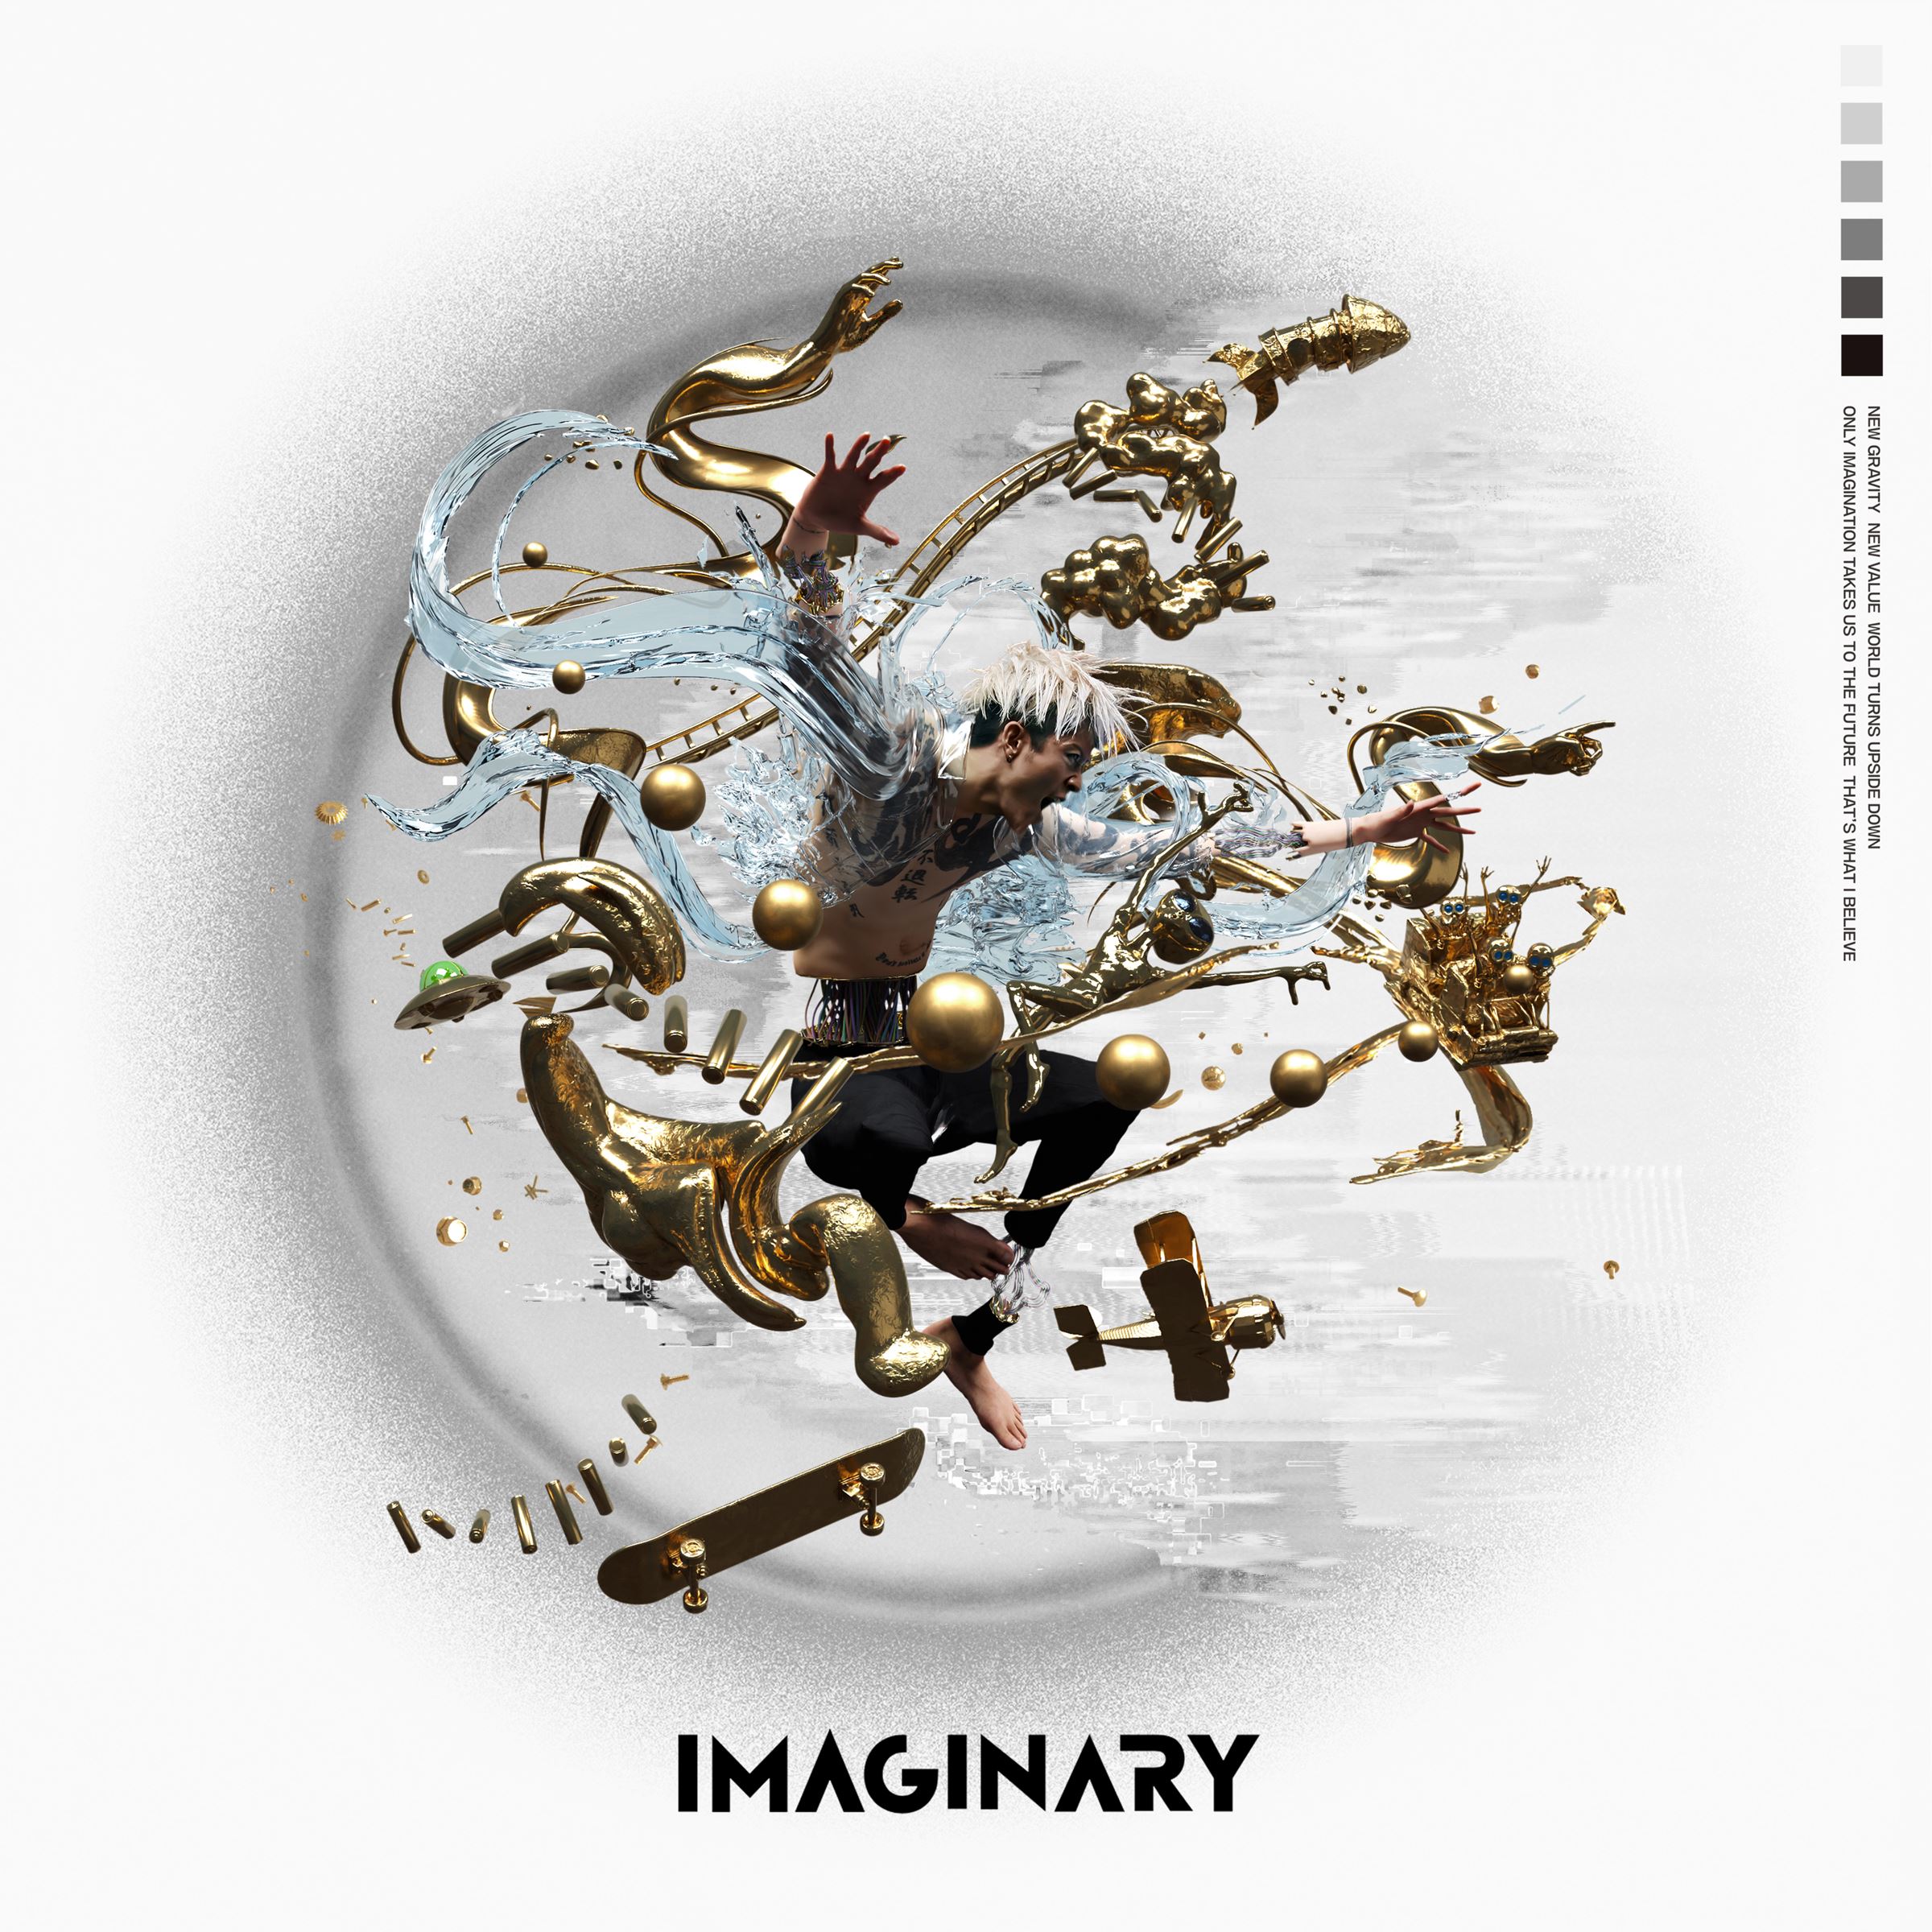 『Imaginary』通常盤 ジャケット